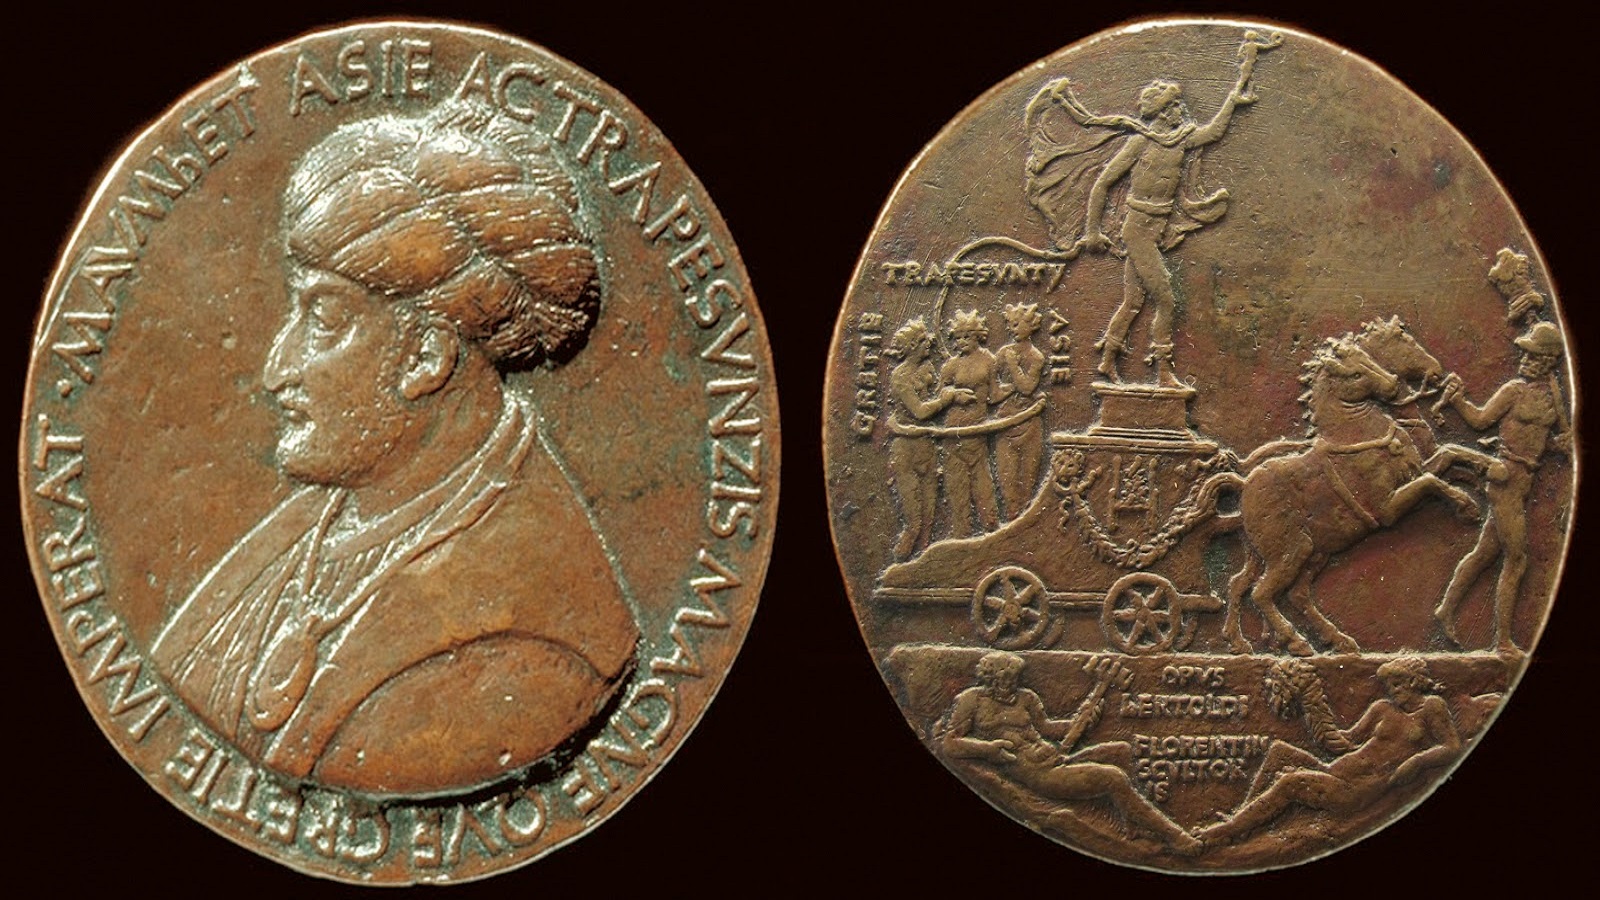  ميدالية من توقيع بيرتولدو دي جيوفاني، من محفوظات "المتحف البريطاني".